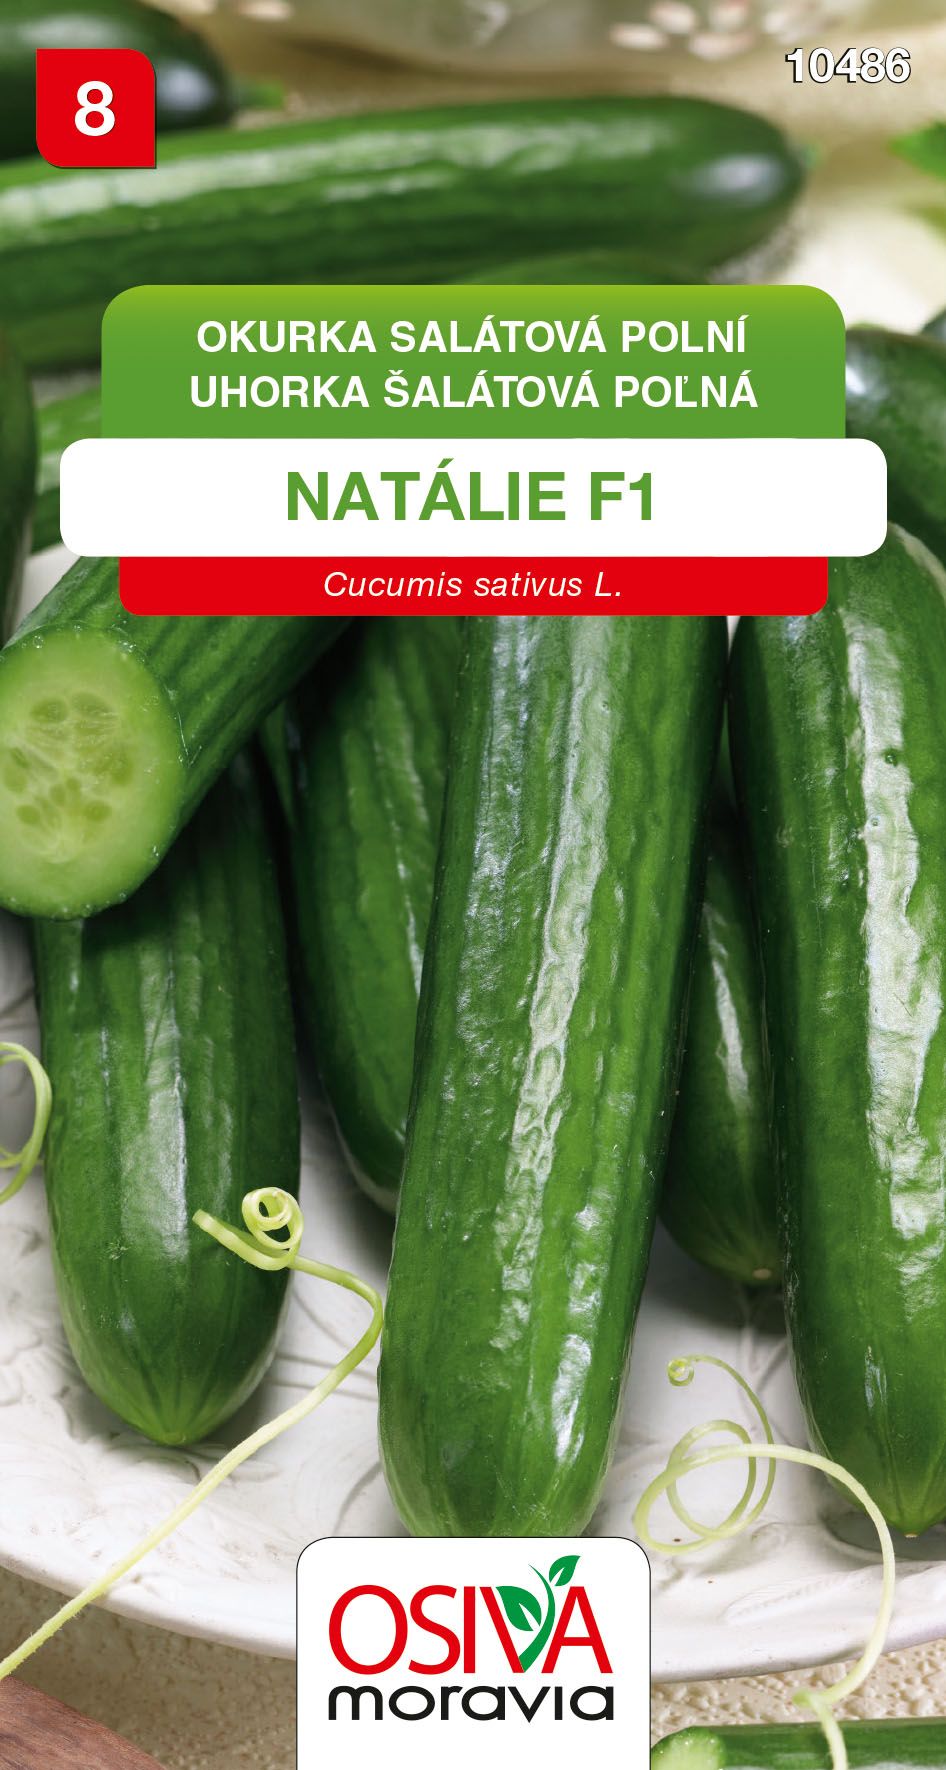 Okurka salátová - Natalie F1